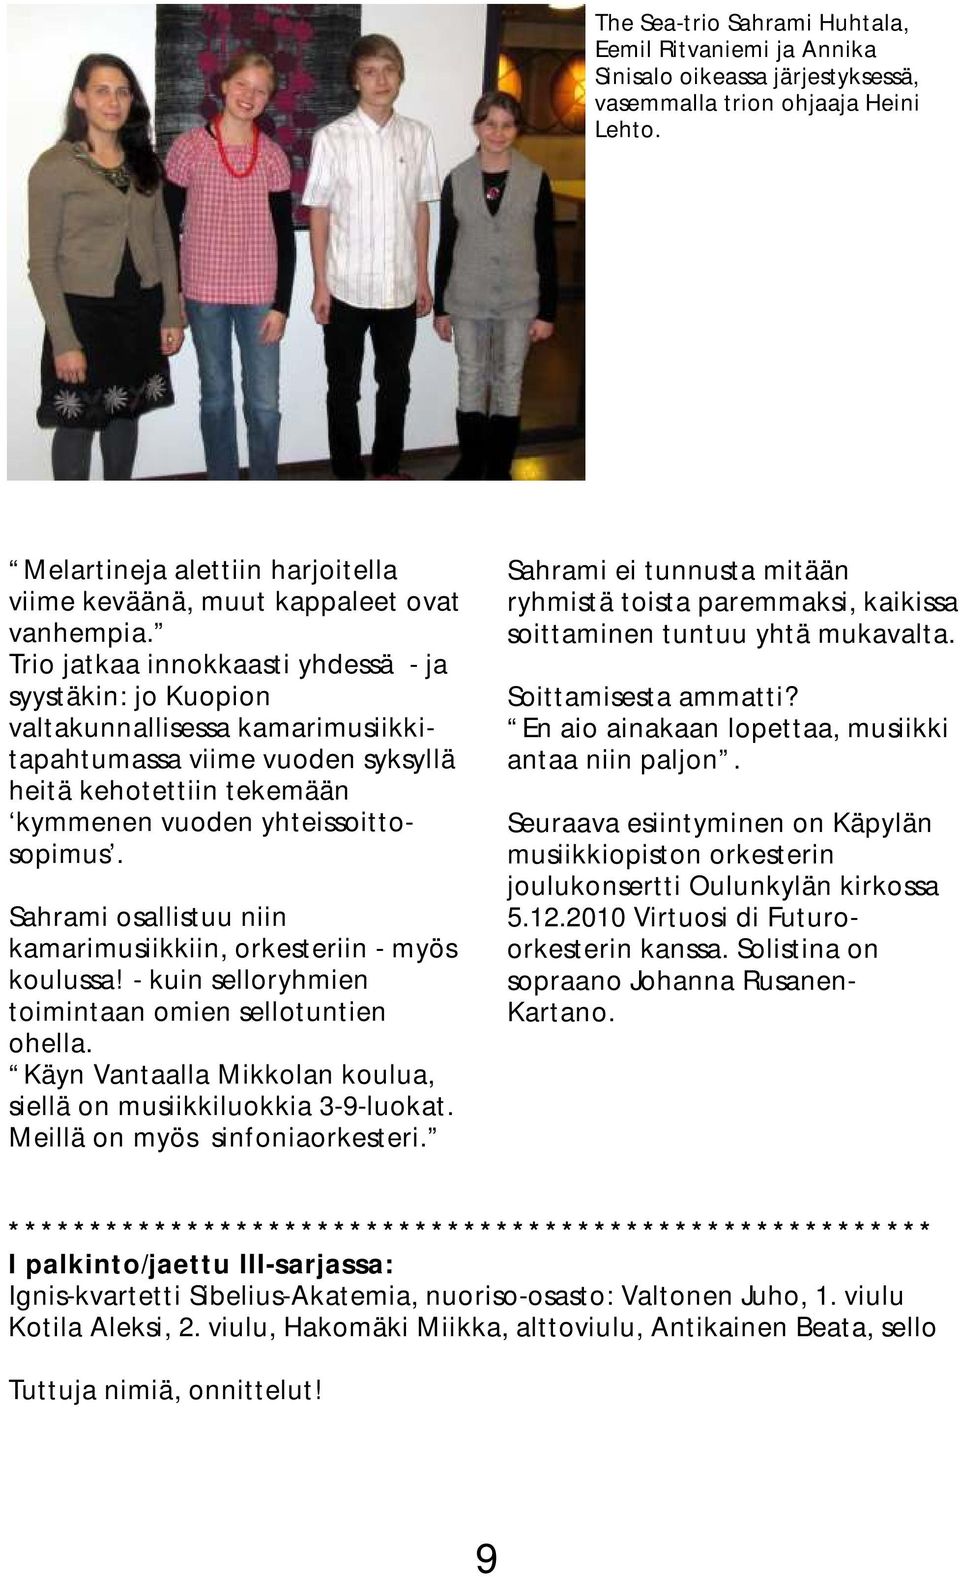 Trio jatkaa innokkaasti yhdessä - ja syystäkin: jo Kuopion valtakunnallisessa kamarimusiikkitapahtumassa viime vuoden syksyllä heitä kehotettiin tekemään kymmenen vuoden yhteissoittosopimus.